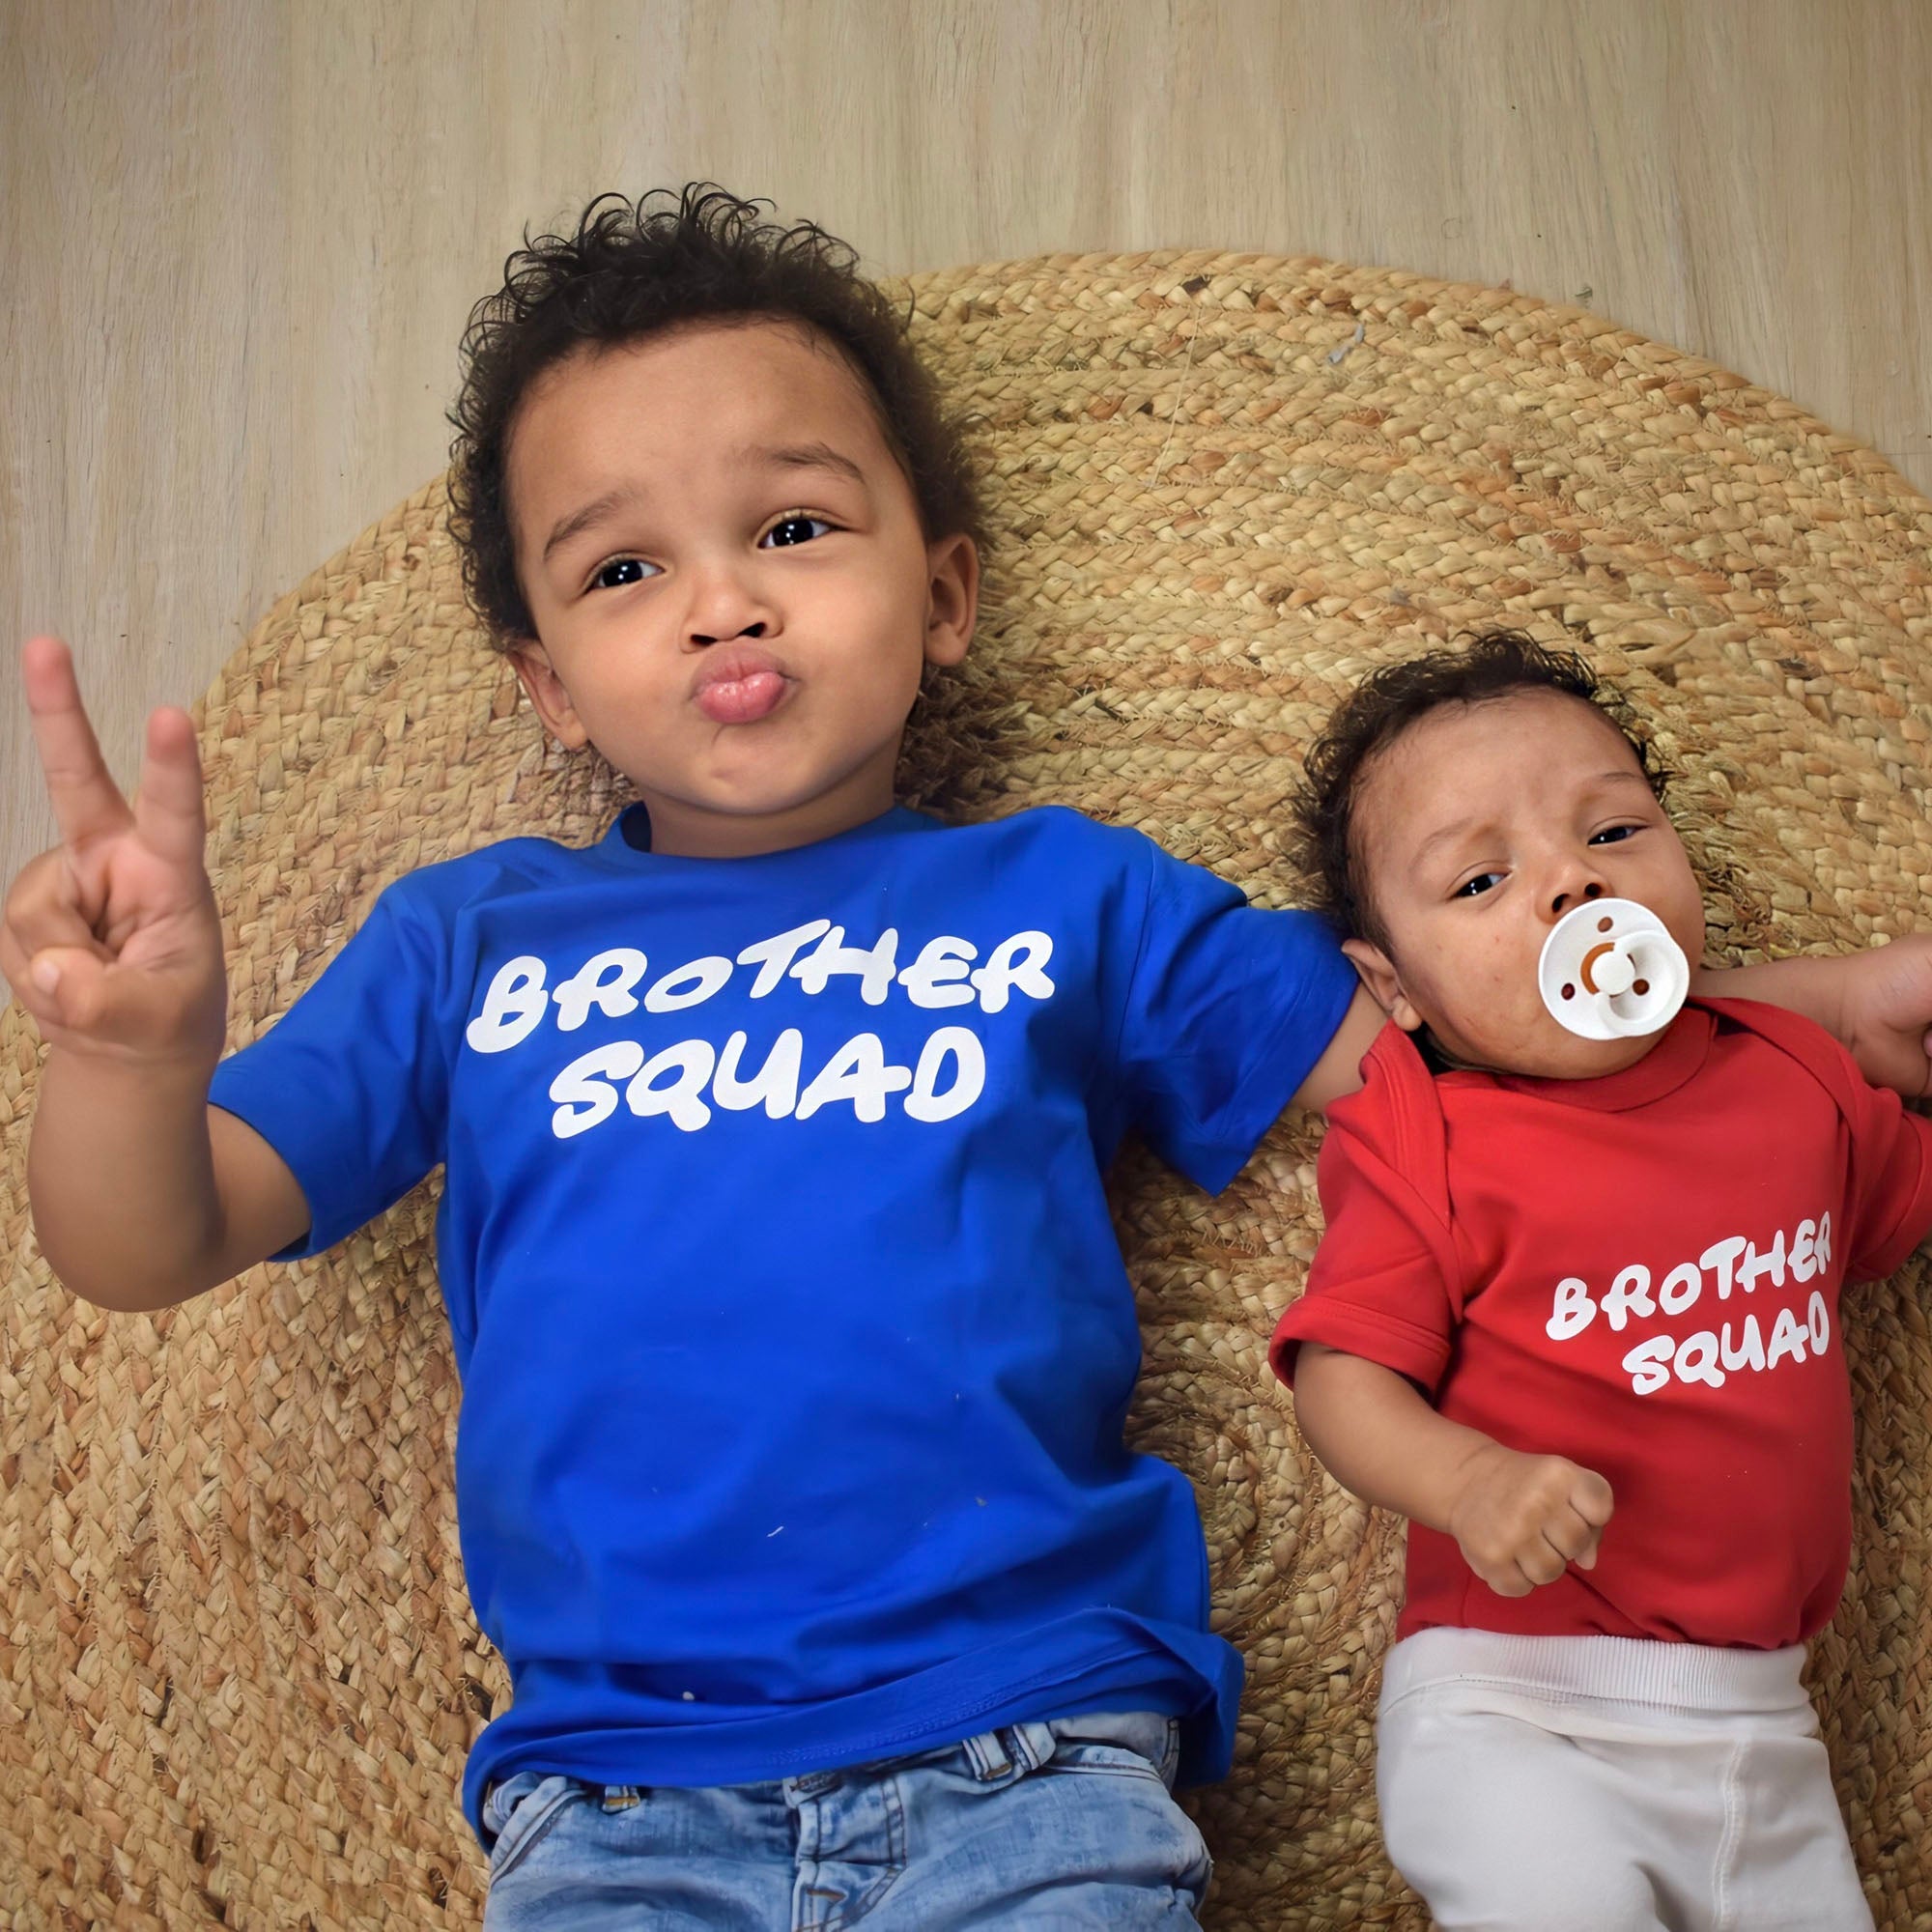 'Brother squad' baby kruippakje met korte mouwen